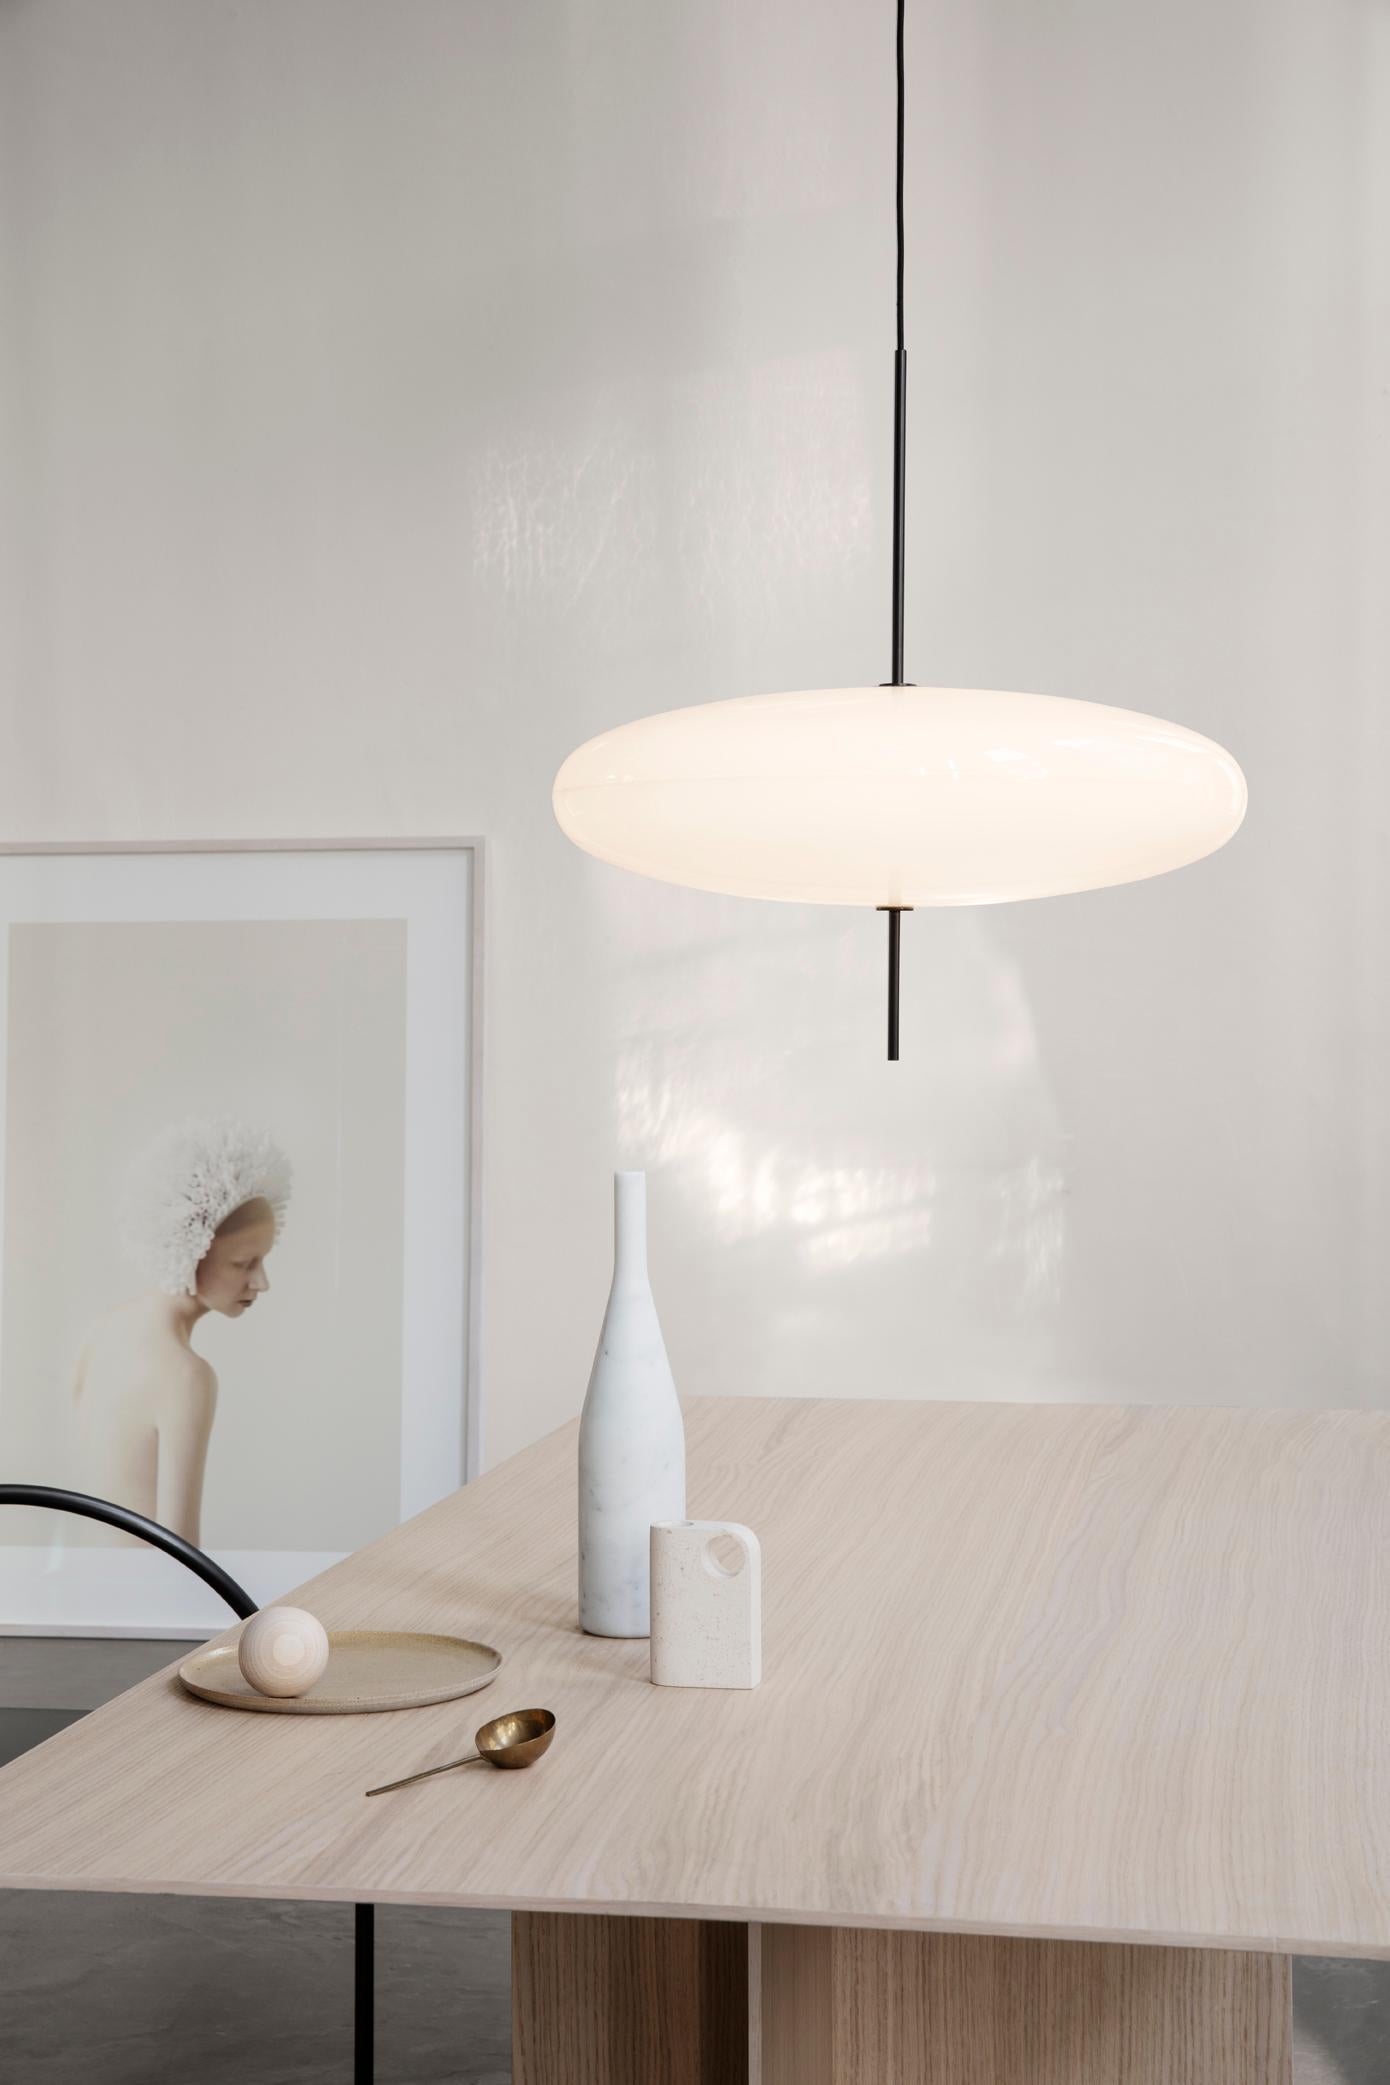 Contemporary Gino Sarfatti Lamp Model 2065 Black White Diffuser, Black Hardware, by Astep For Sale